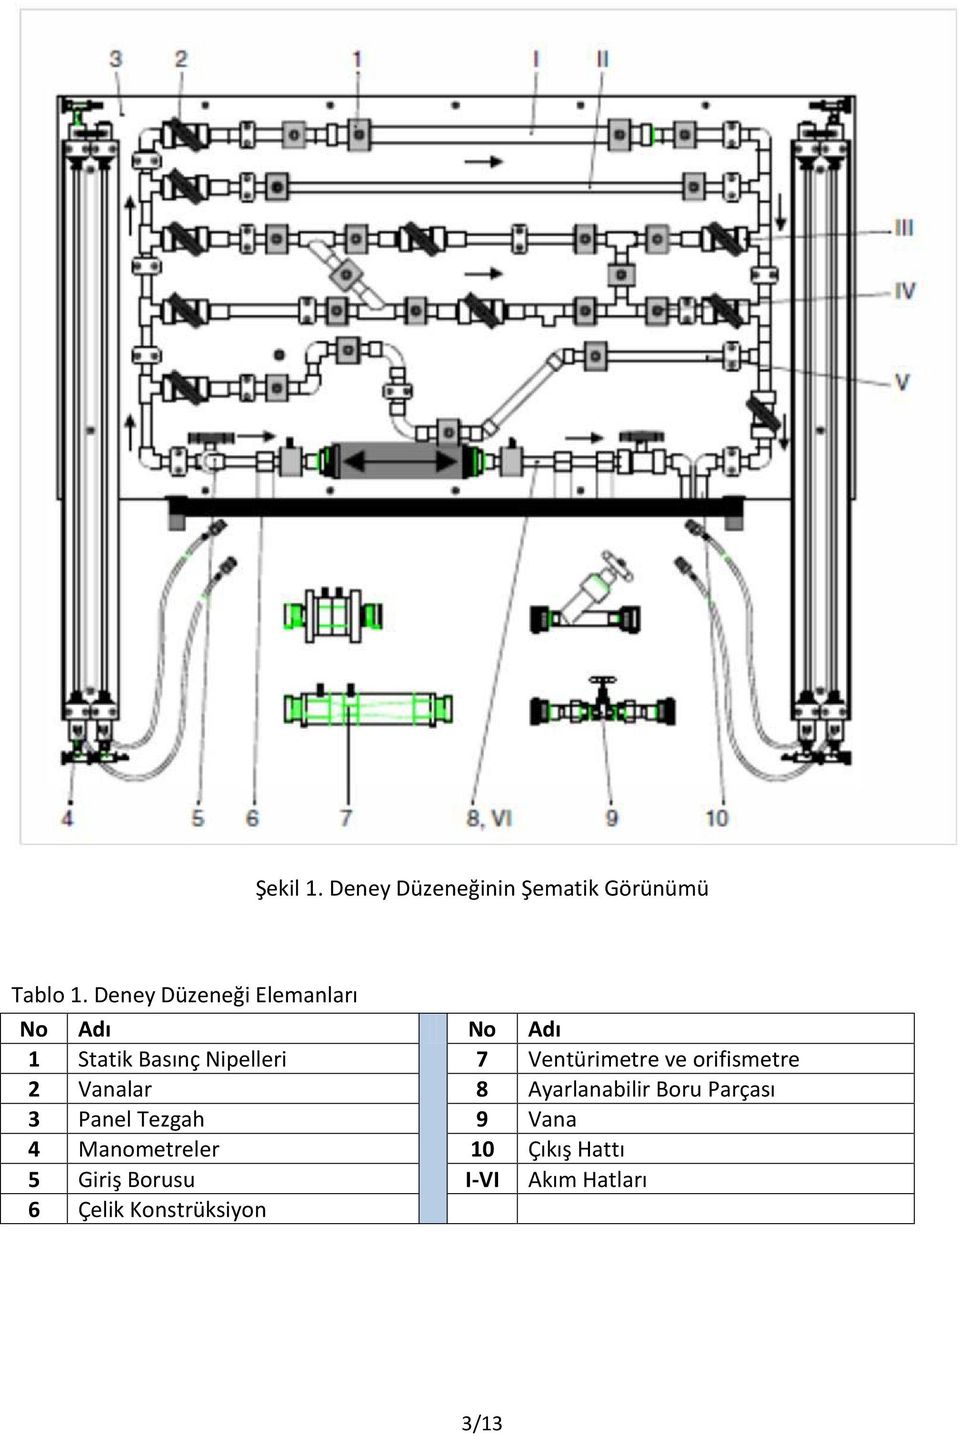 entürimetre ve orifismetre analar 8 Ayarlanabilir Boru Parçası 3 Panel